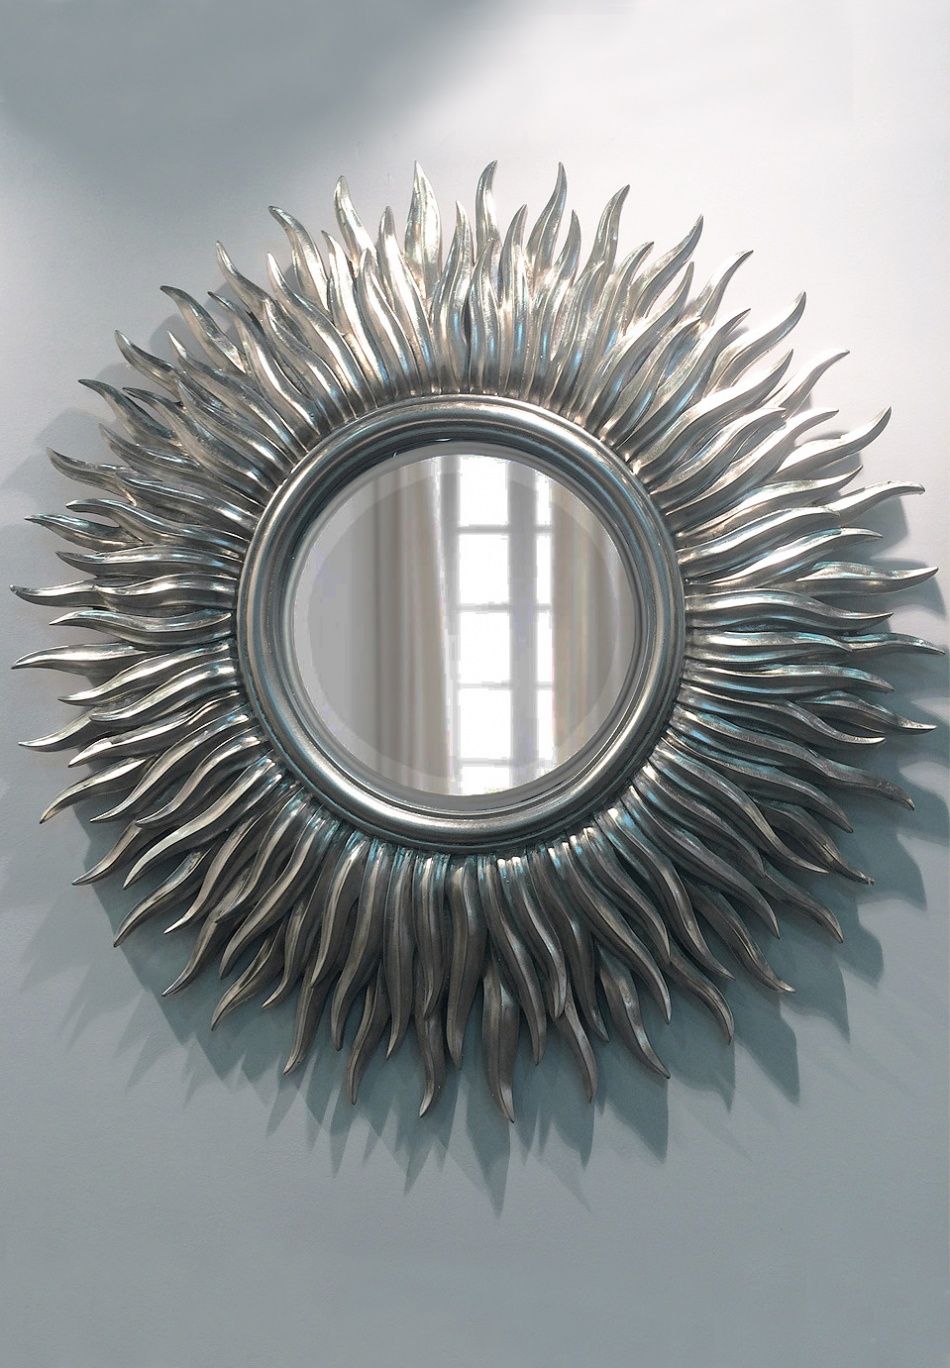 Купить зеркало в саратове. Декоративные зеркала. Зеркало настенное. Дизайнерские зеркала. Зеркало-солнце.